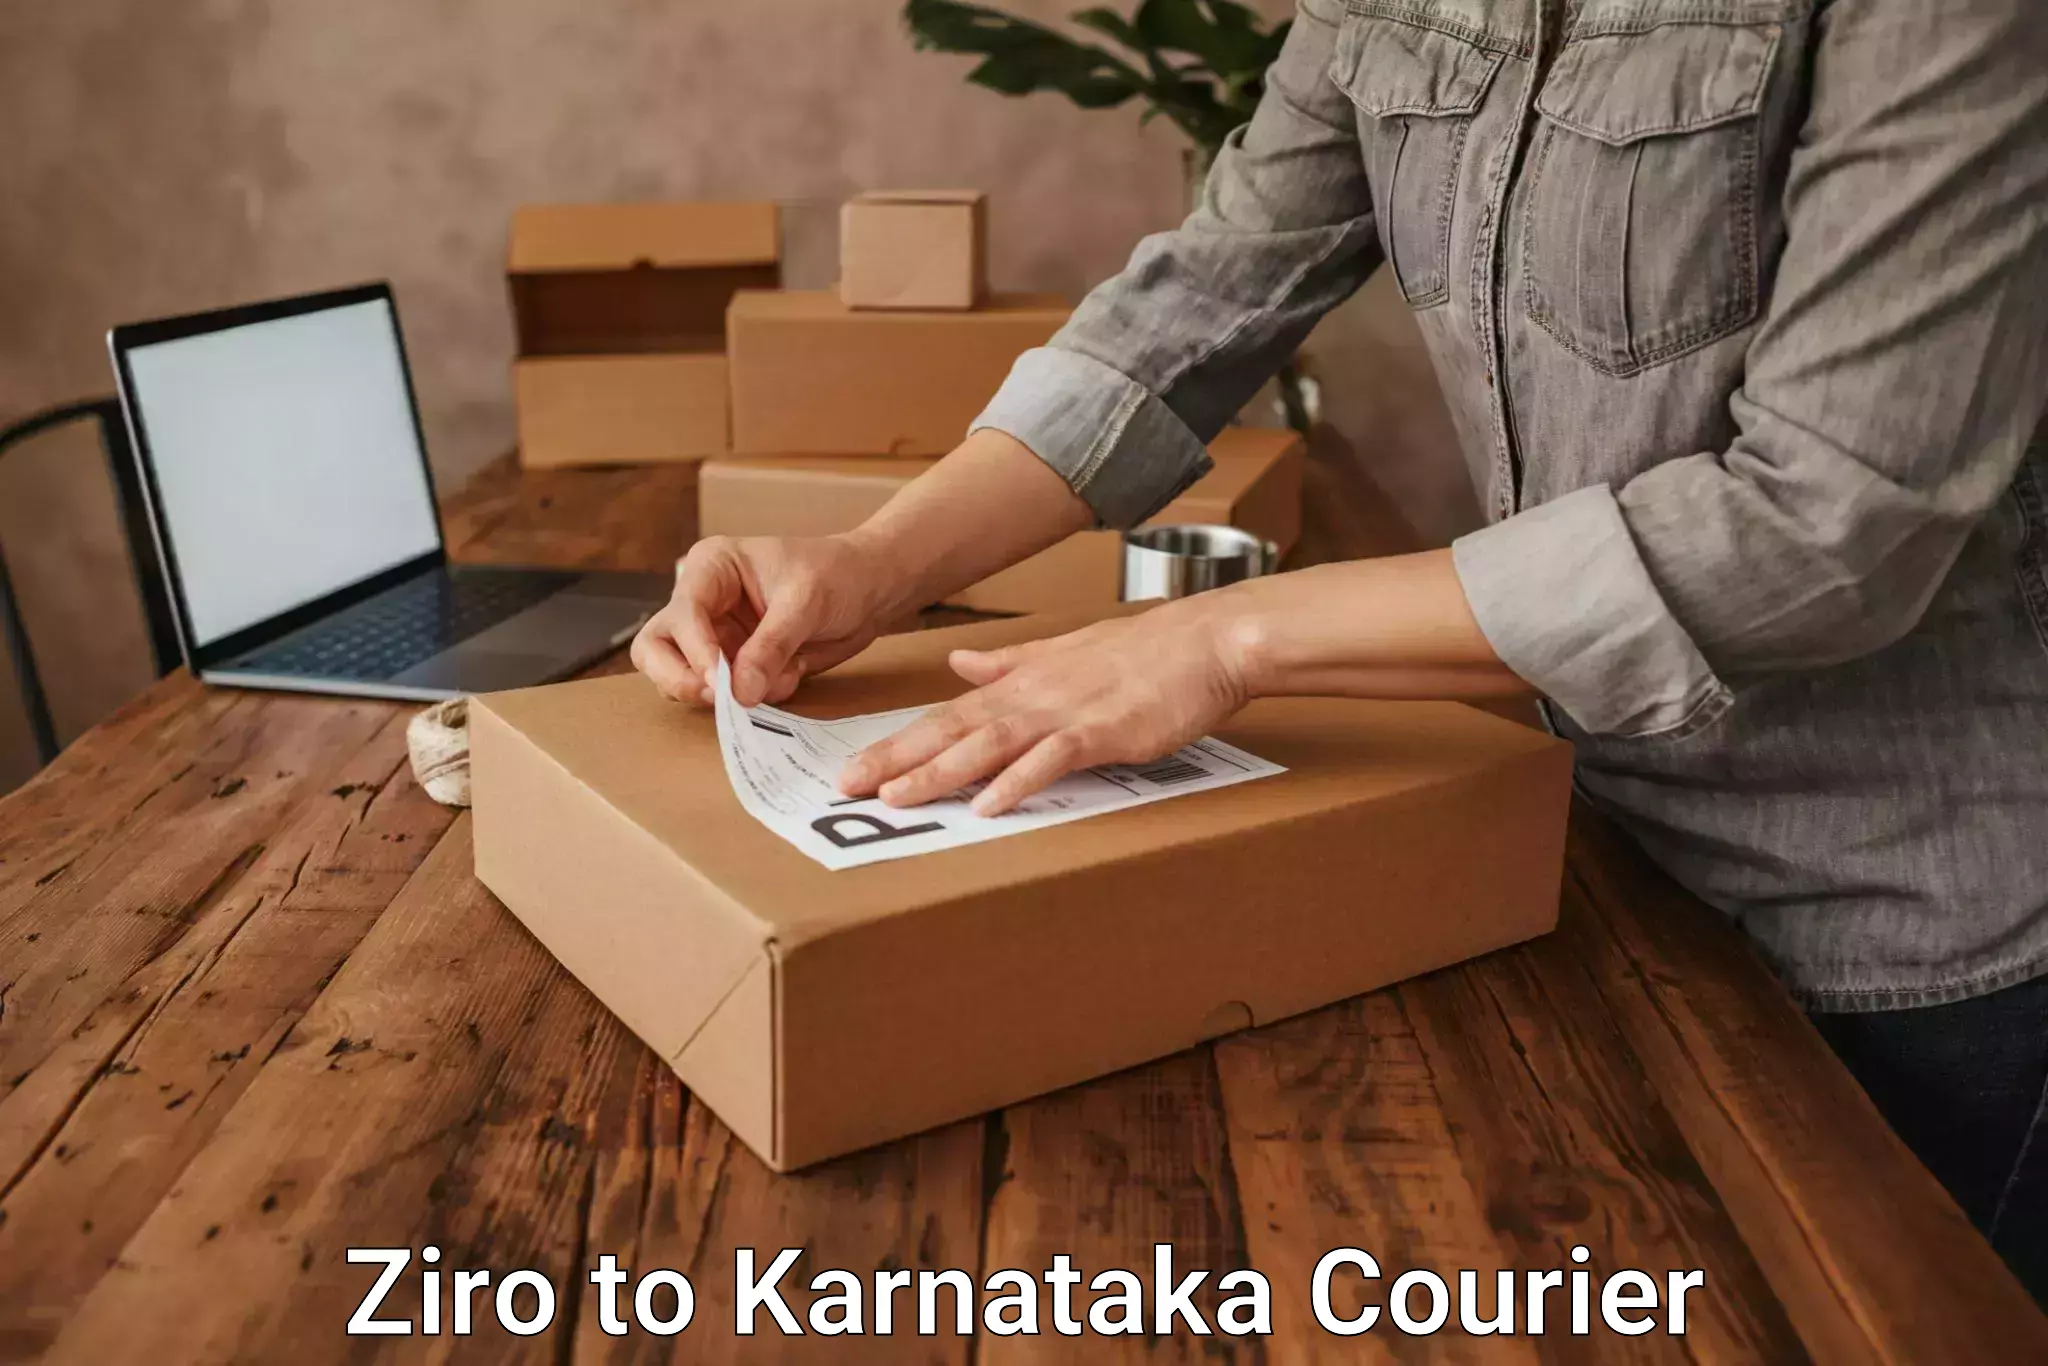 International courier networks Ziro to Karnataka